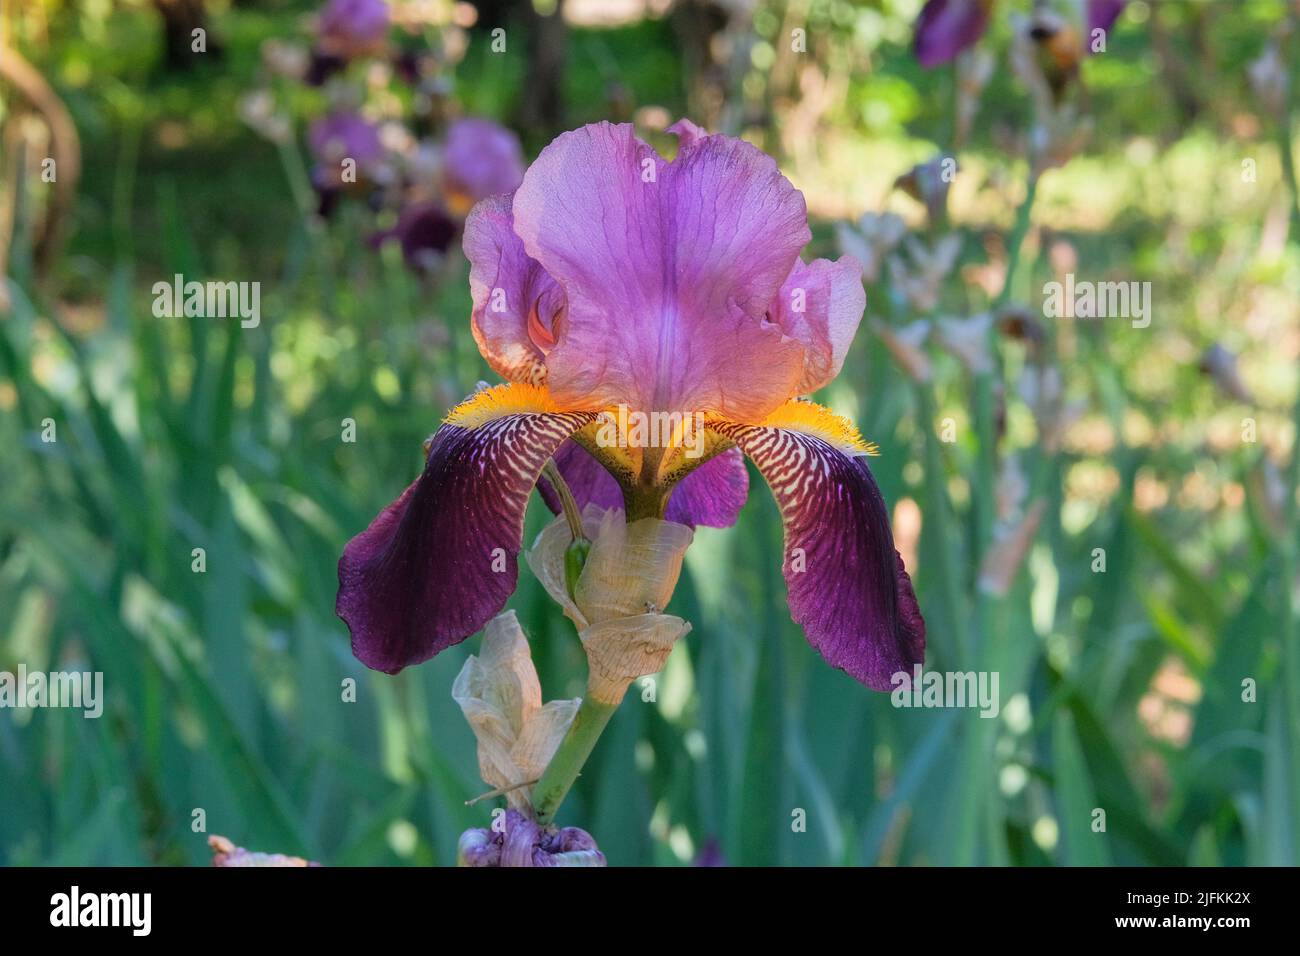 Iris está creciendo en el parque. Planta púrpura o violeta, cultivada por sus llamativas flores. Foto de stock